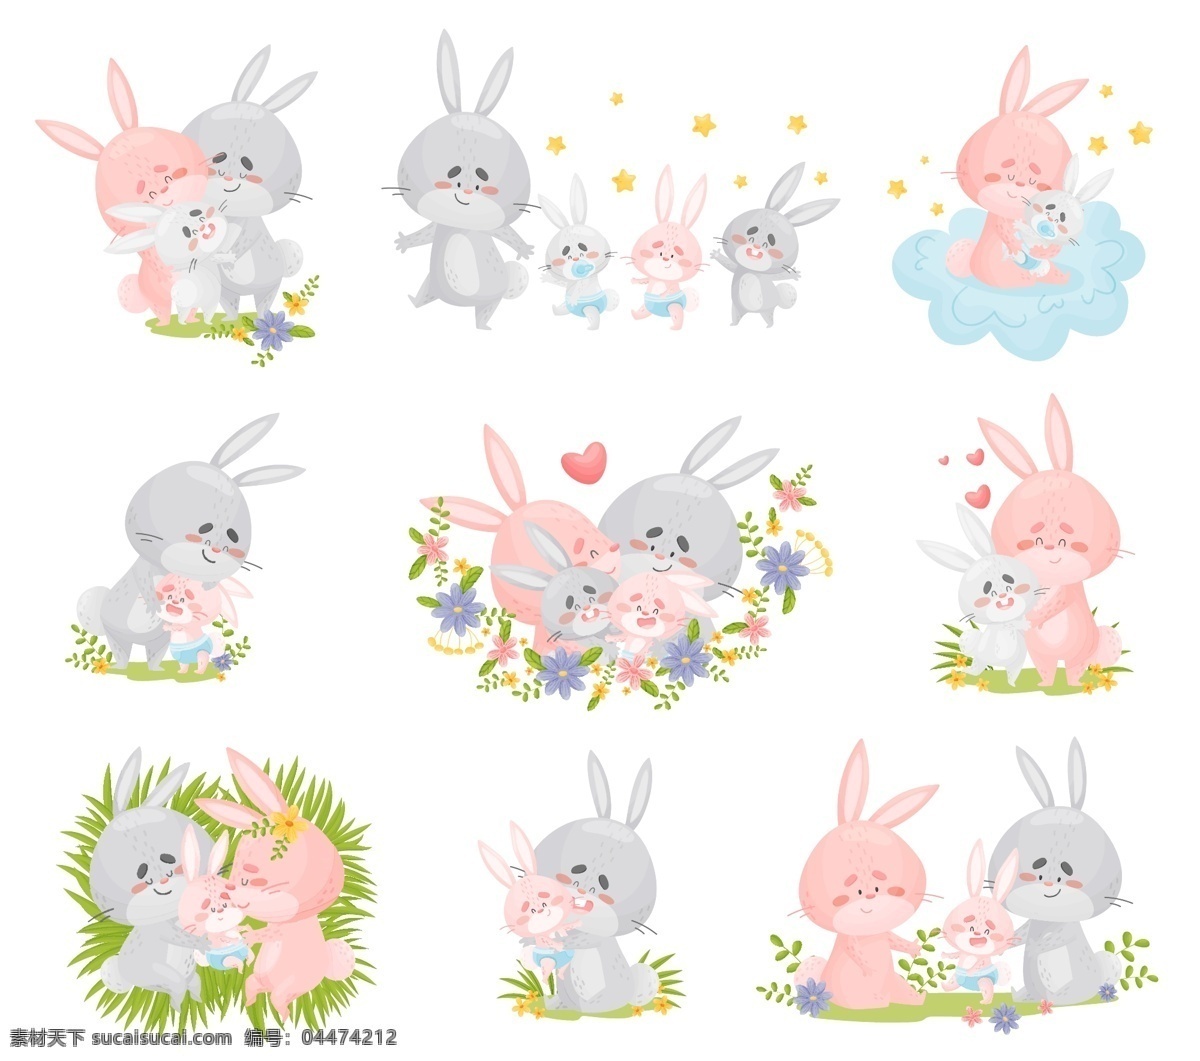 卡通兔子图片 卡通动物 动物印花 动物图案 可爱动物 卡哇伊 动物素材 手绘动物 卡通动物生物 卡通设计